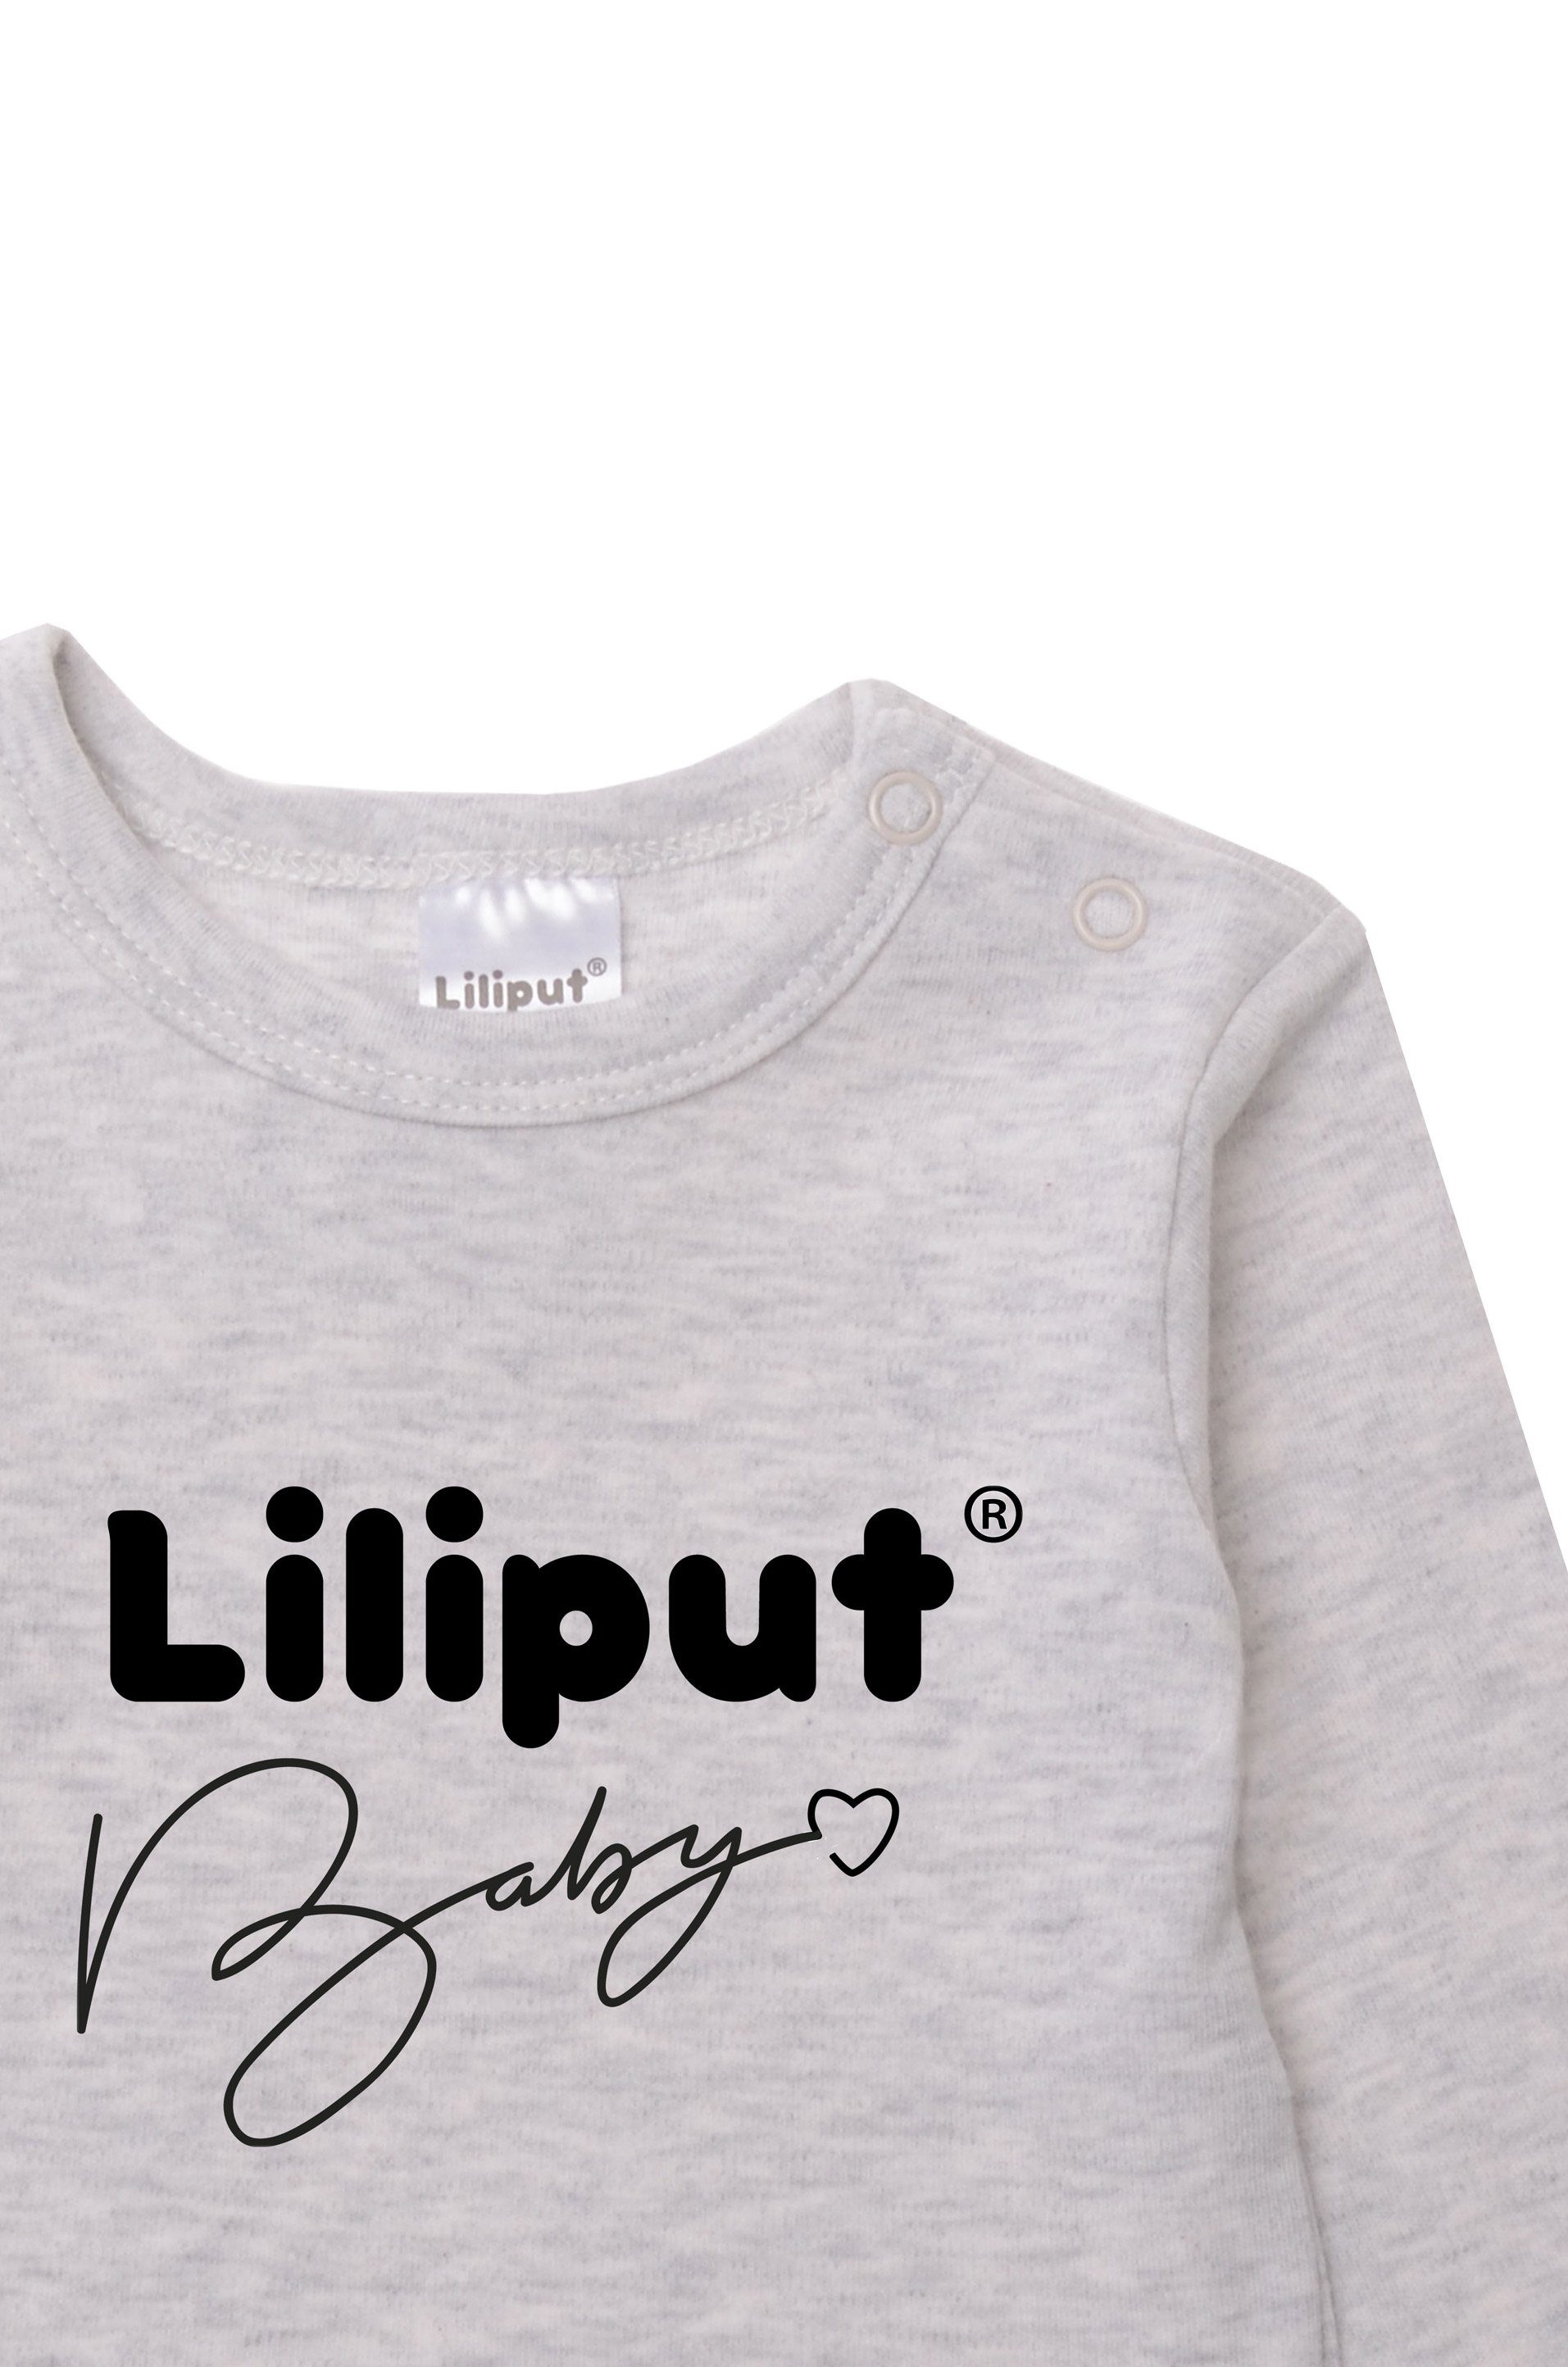 Liliput Langarmshirt praktischen mit Liiput Baby Druckknöpfen